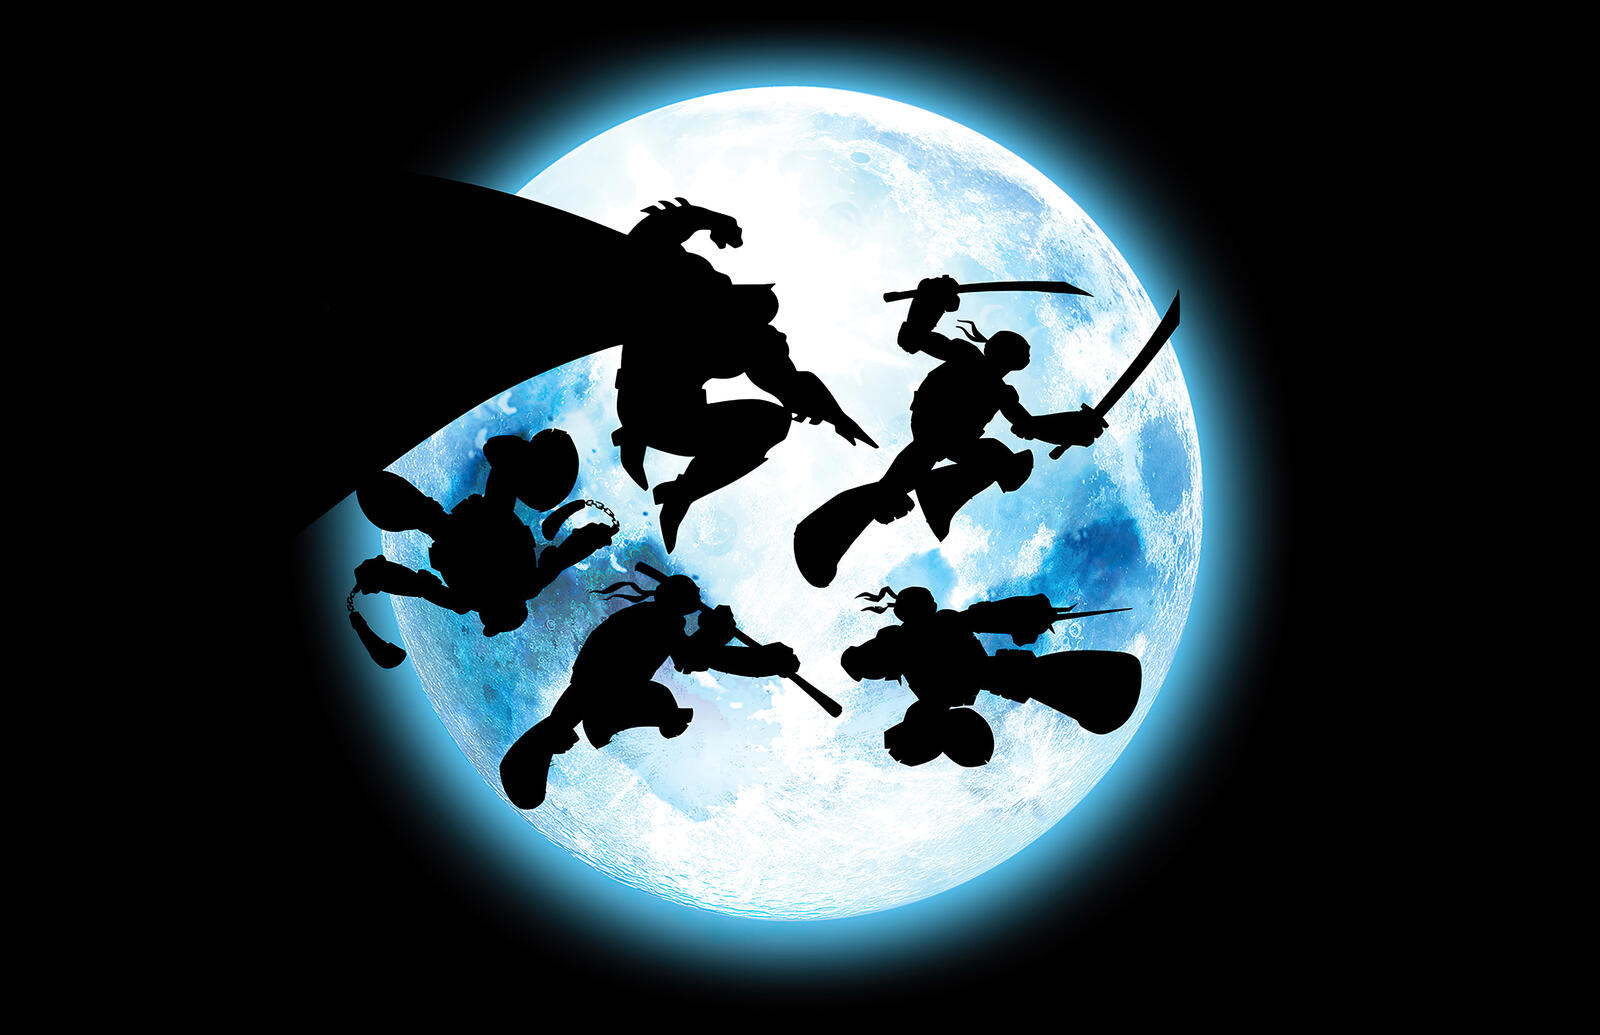 Бесплатное фото Силуэт черепашек ниндзя на фоне луны